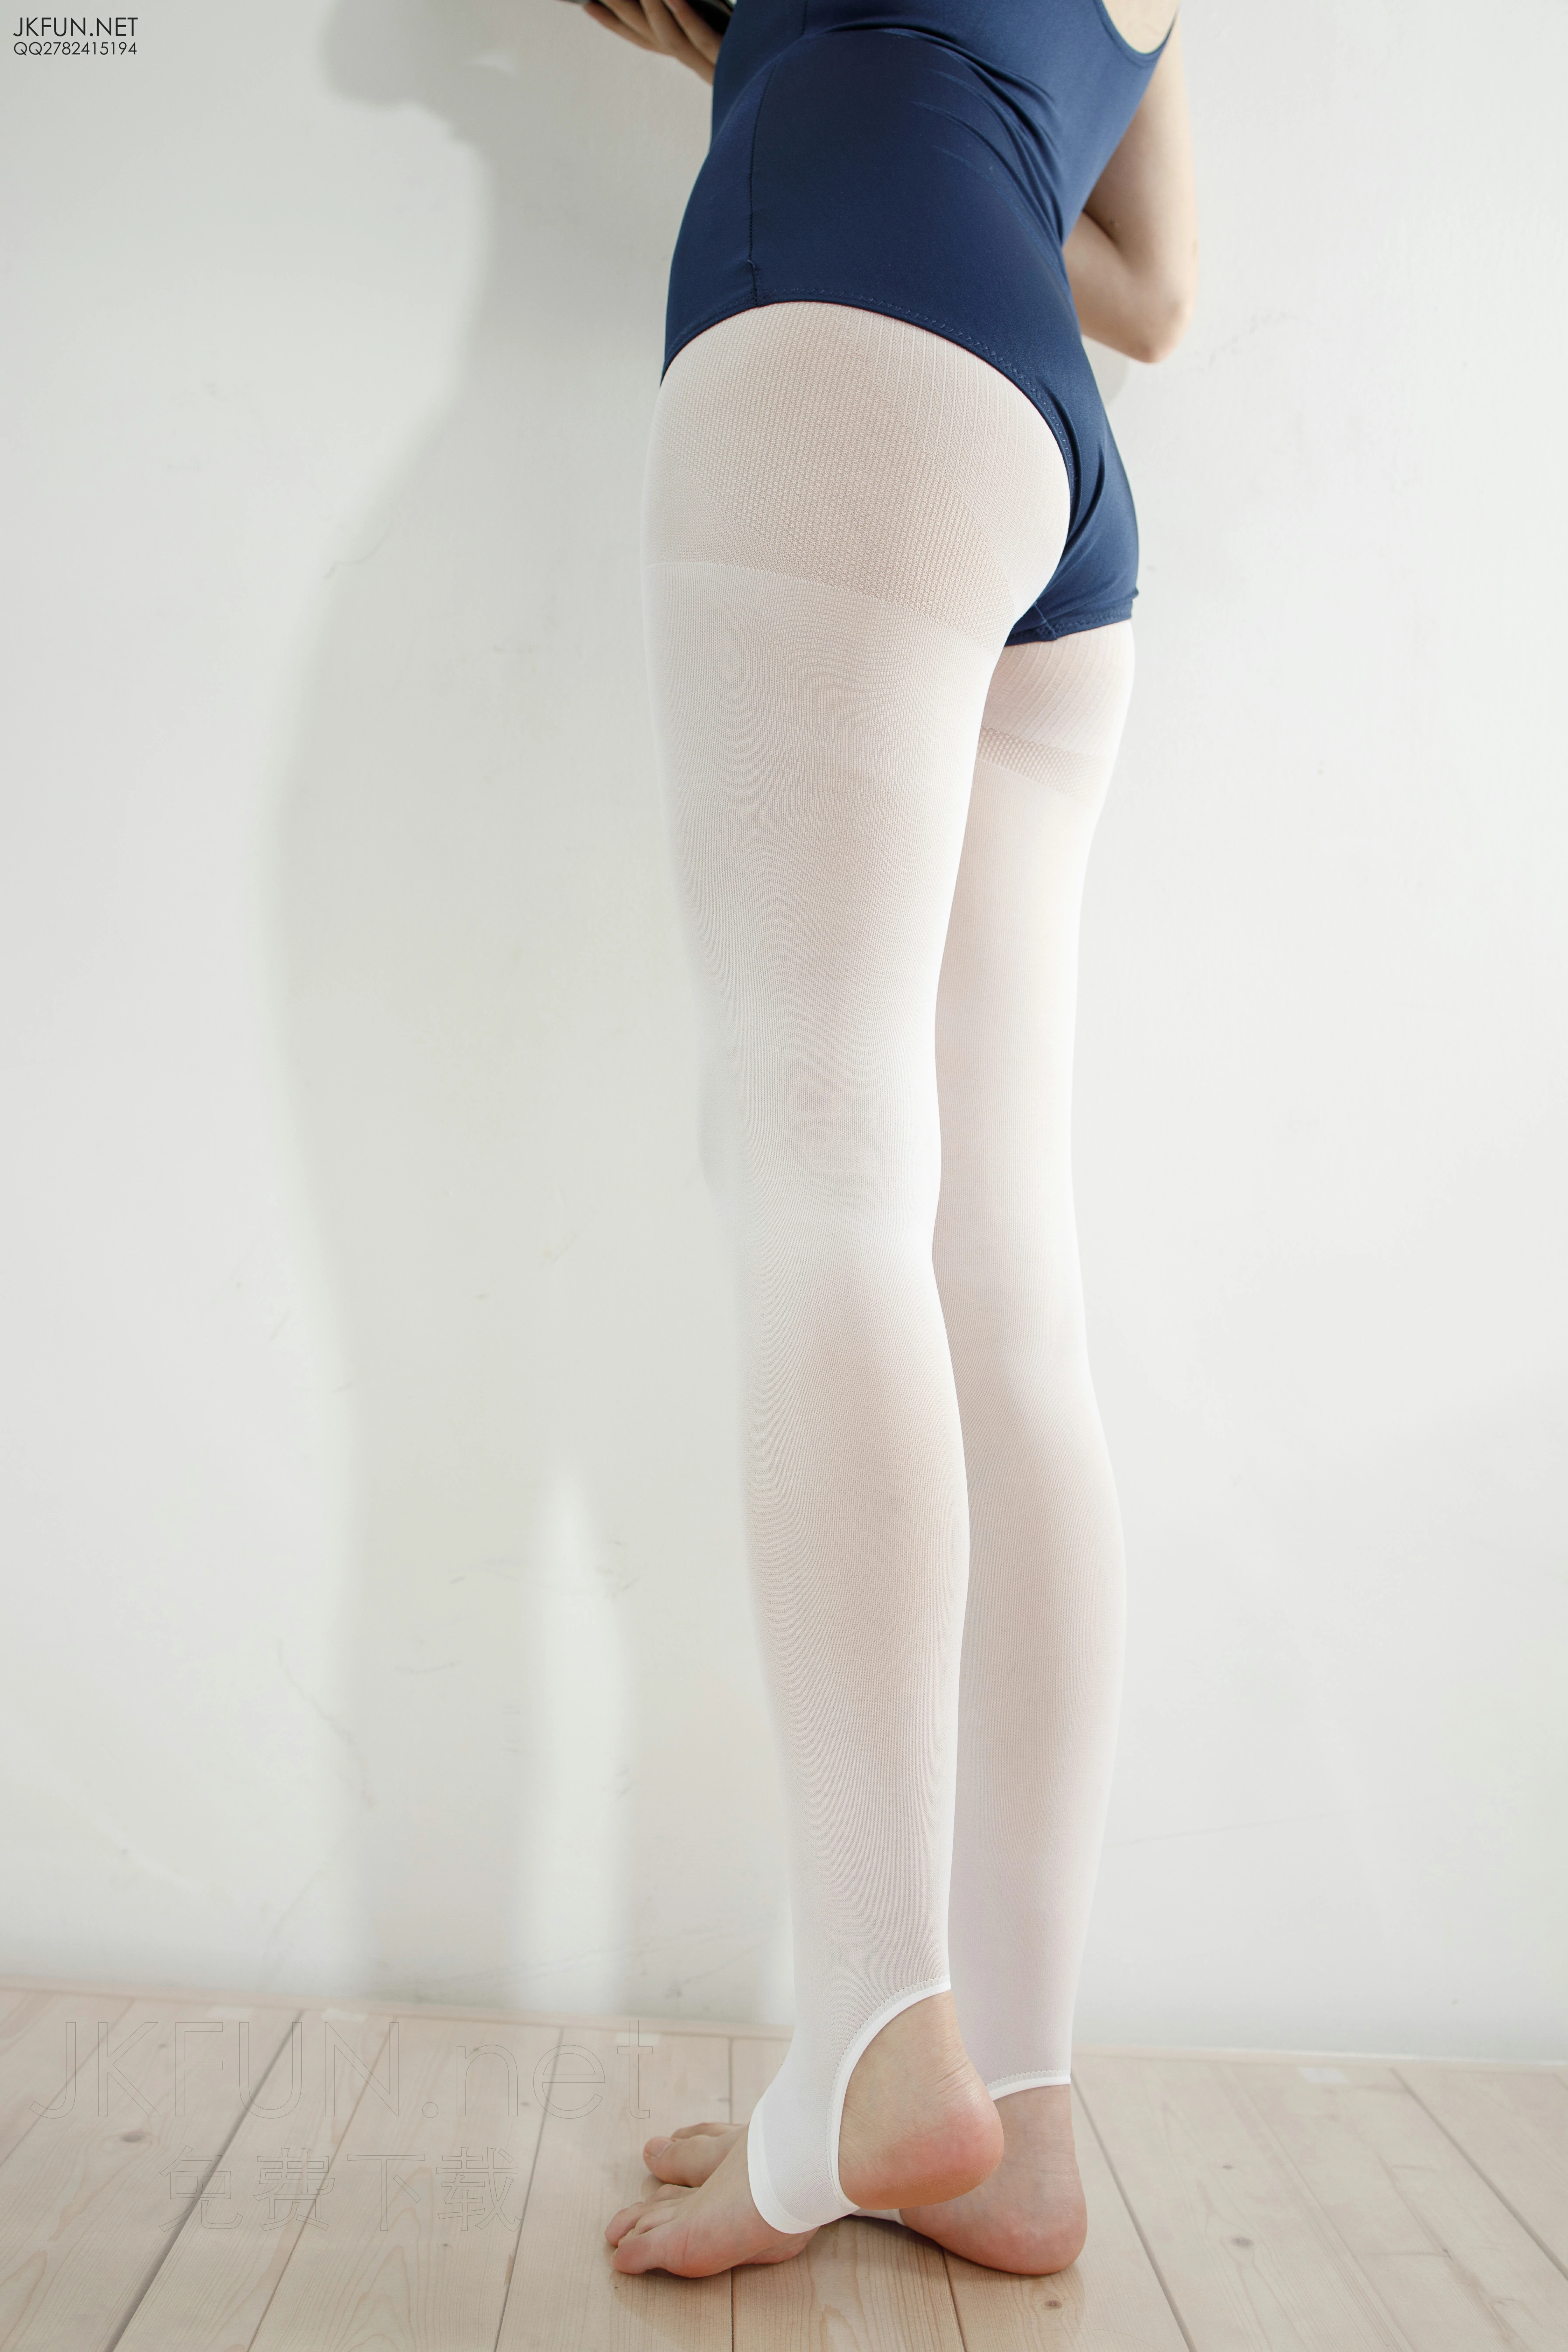 [森萝财团]JKFUN-010 20D白丝黏液 性感小萝莉 蓝色连体运动内衣加白色丝袜美腿玉足私房写真集,